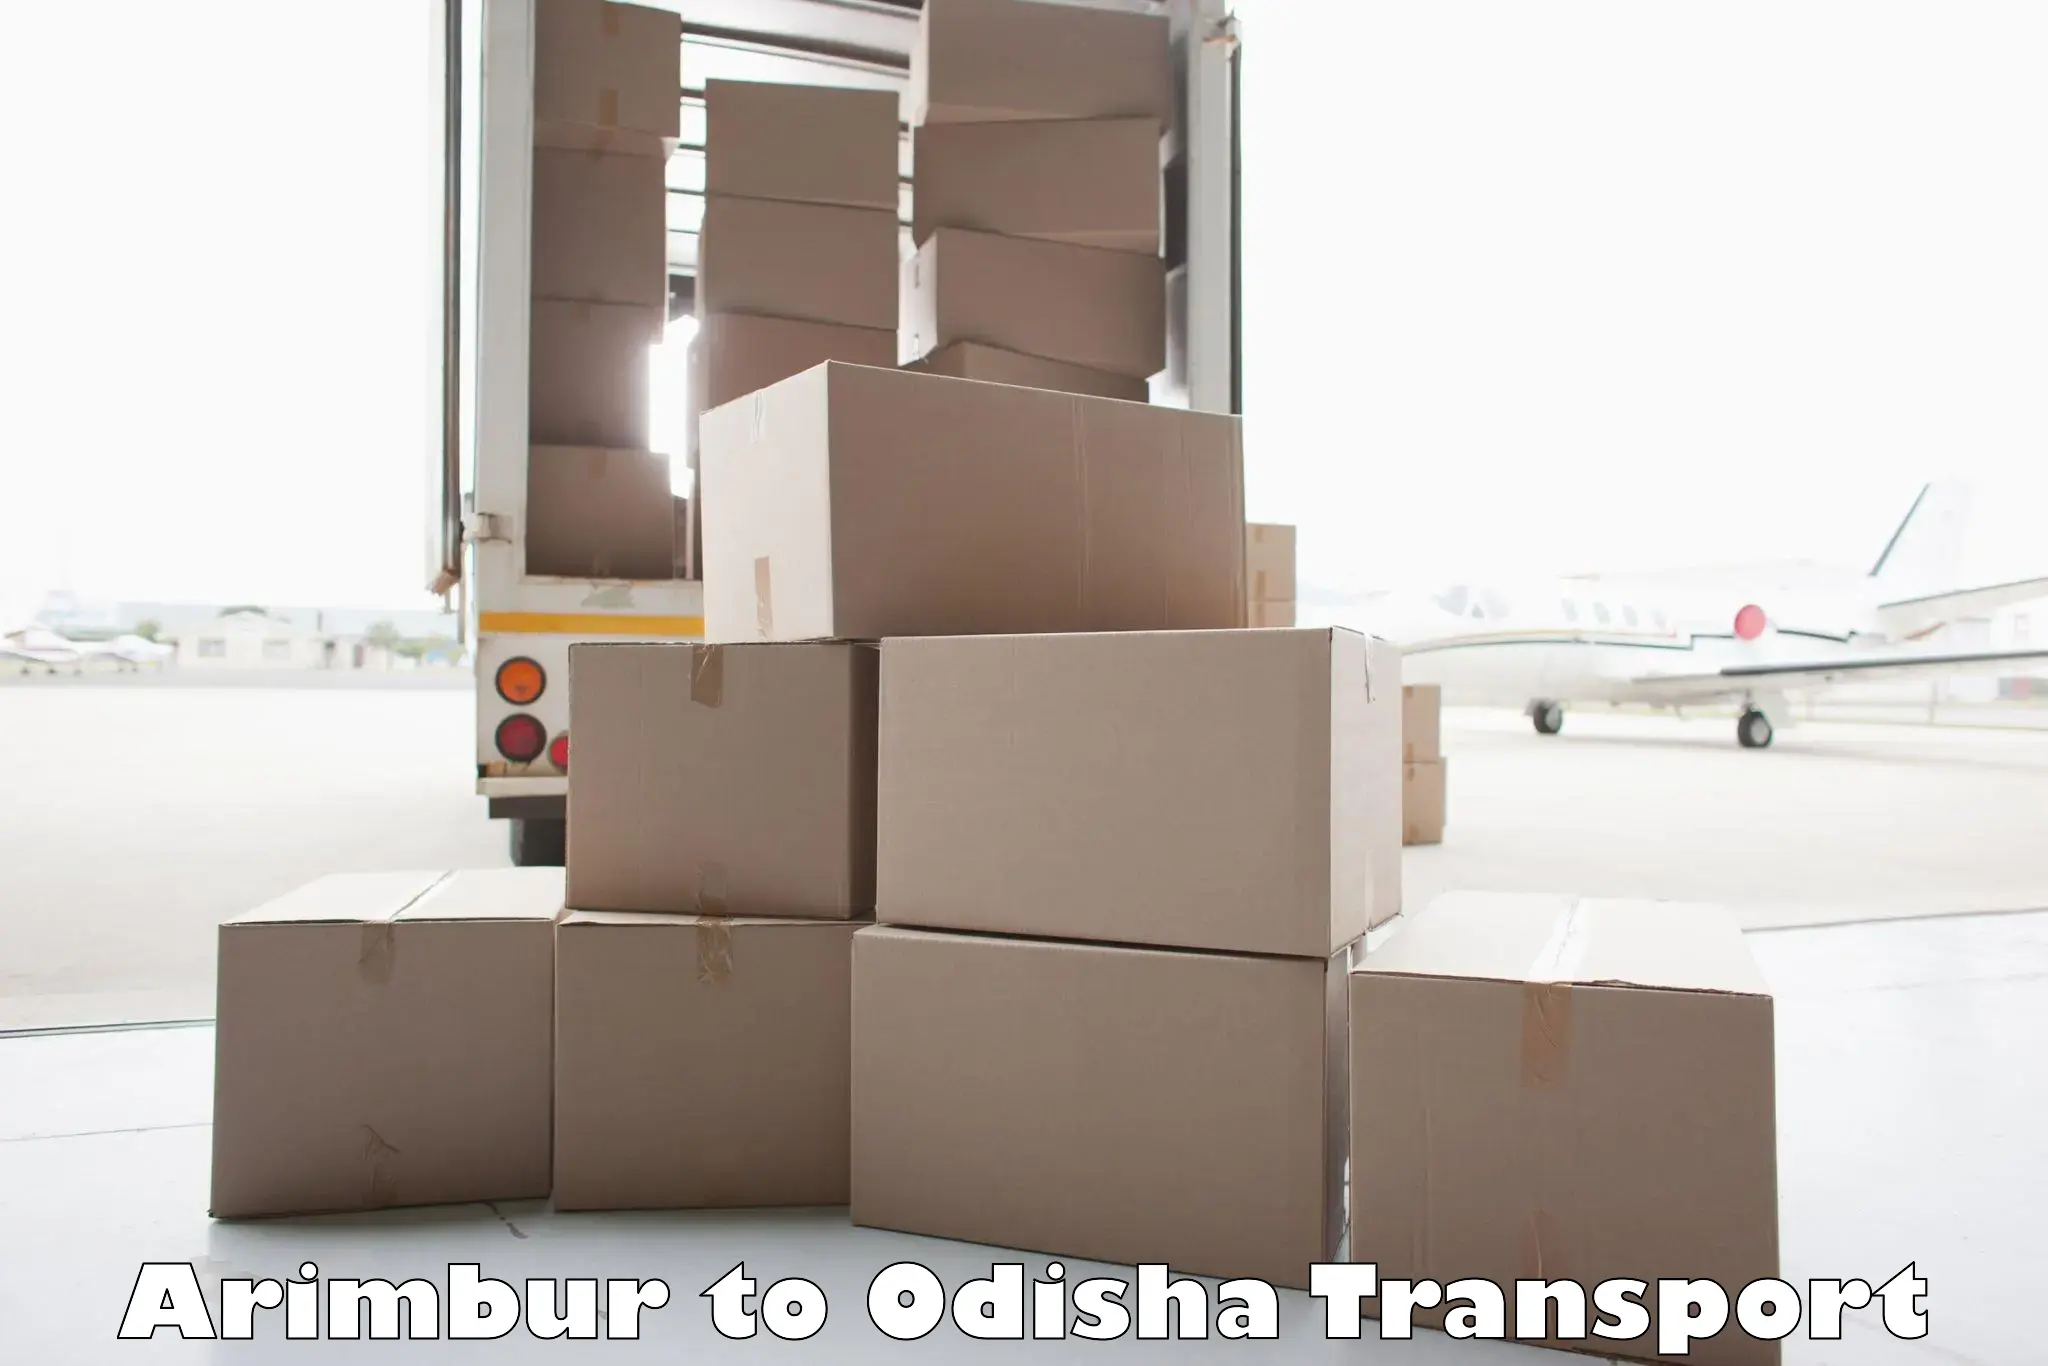 Lorry transport service Arimbur to Asika